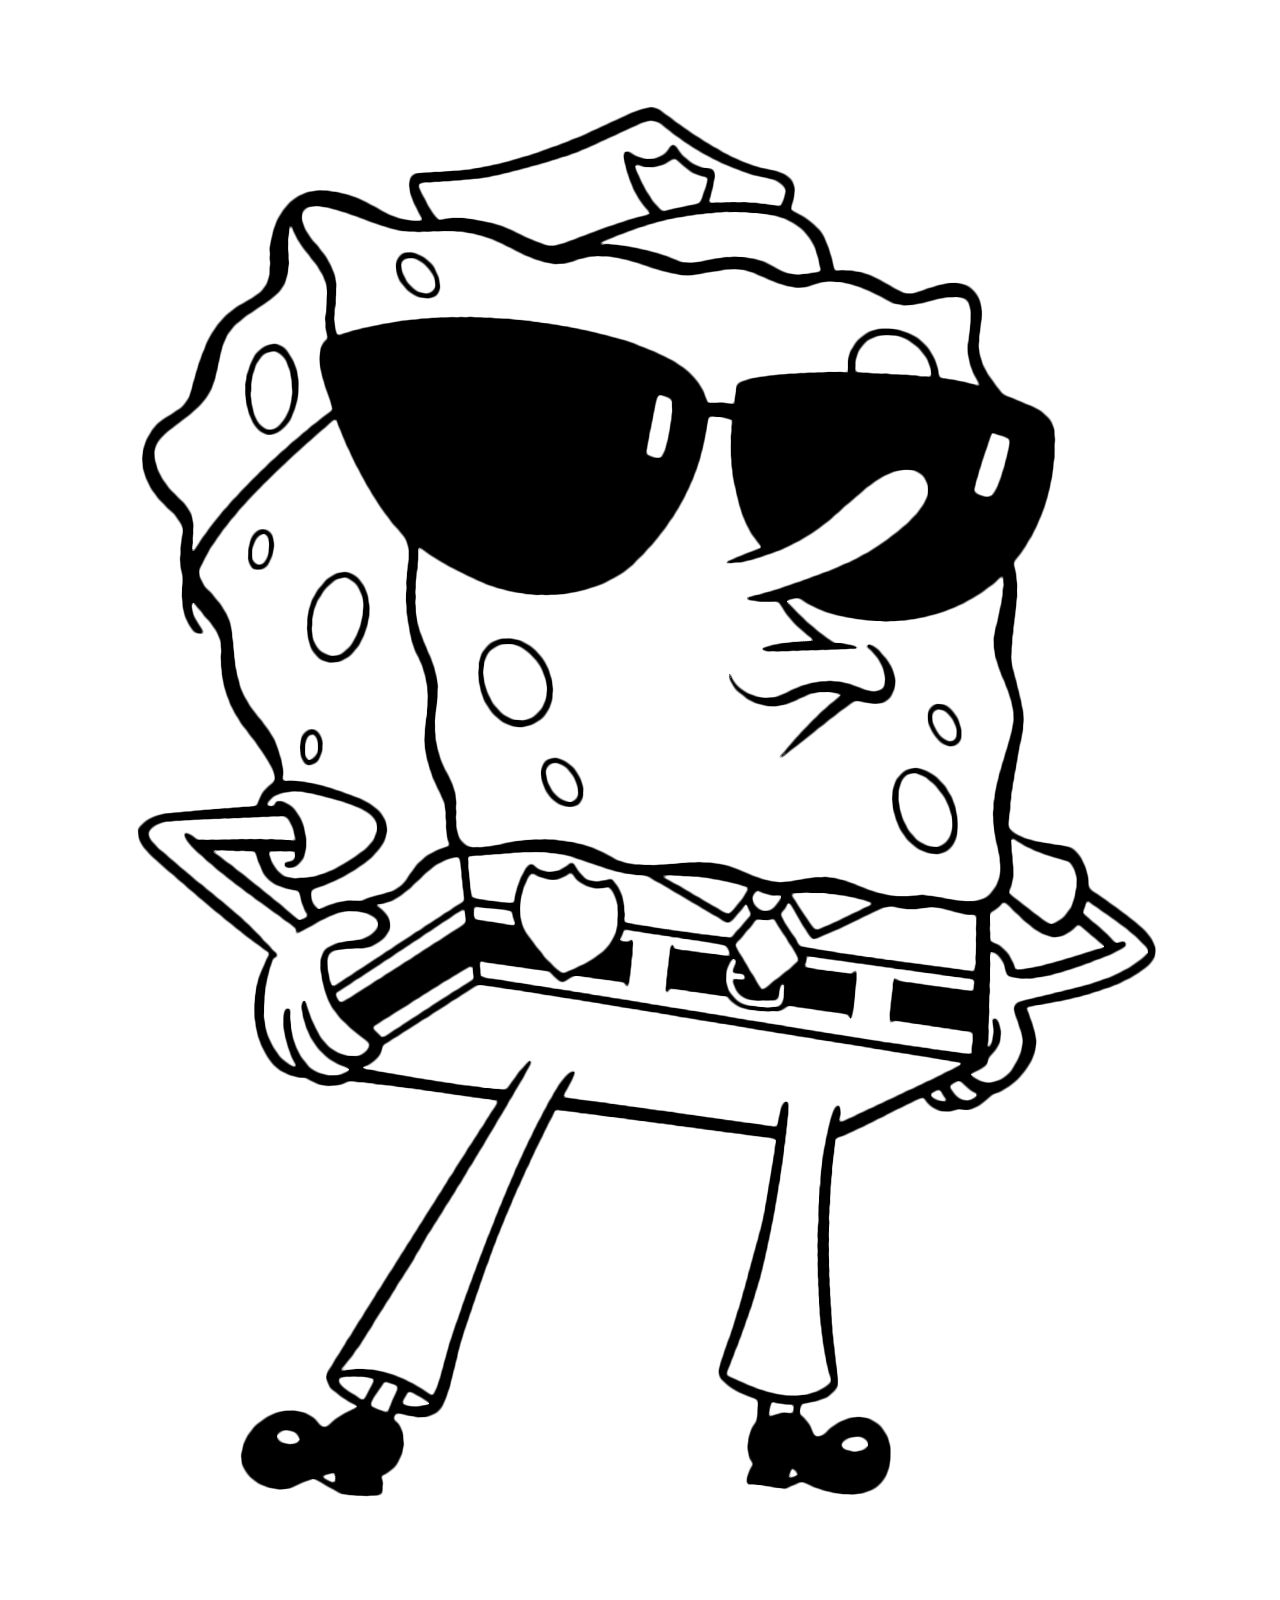 SpongeBob - SpongeBob dressed as a policeman with sunglasses